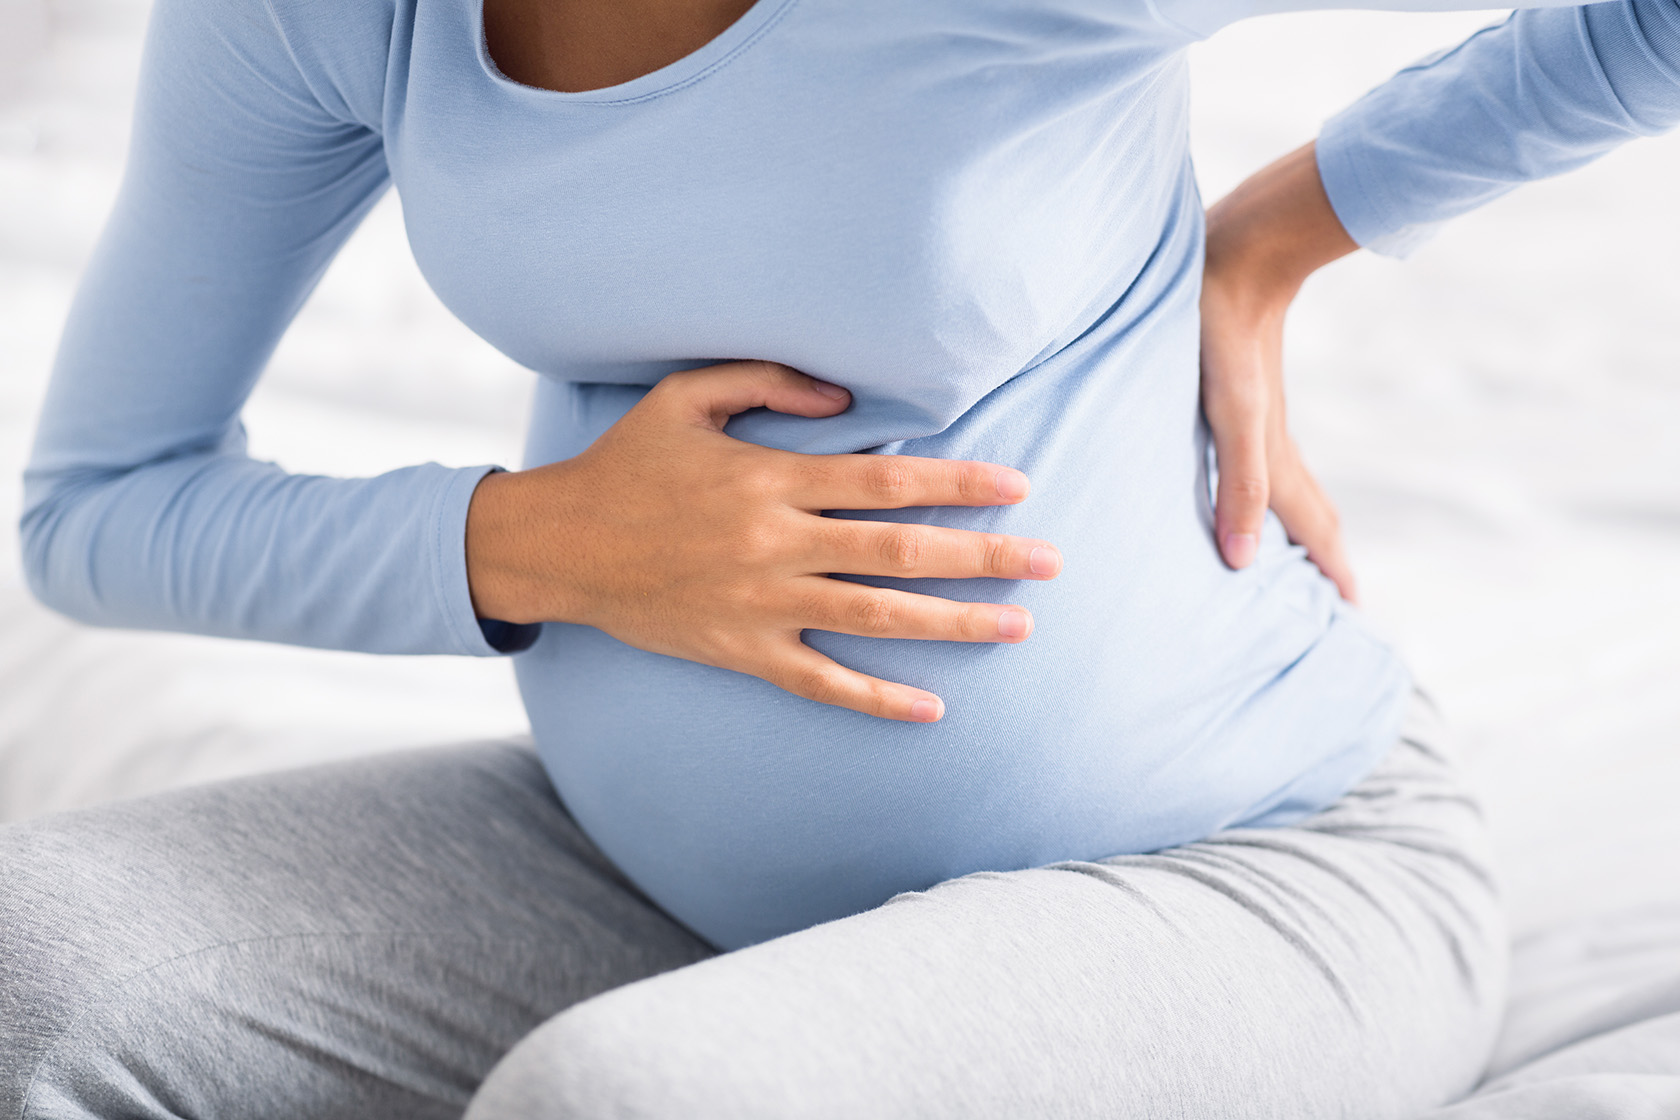 Гипертонус матки у беременных | Статьи врачей клиники EMC о заболеваниях, диагностике и лечении